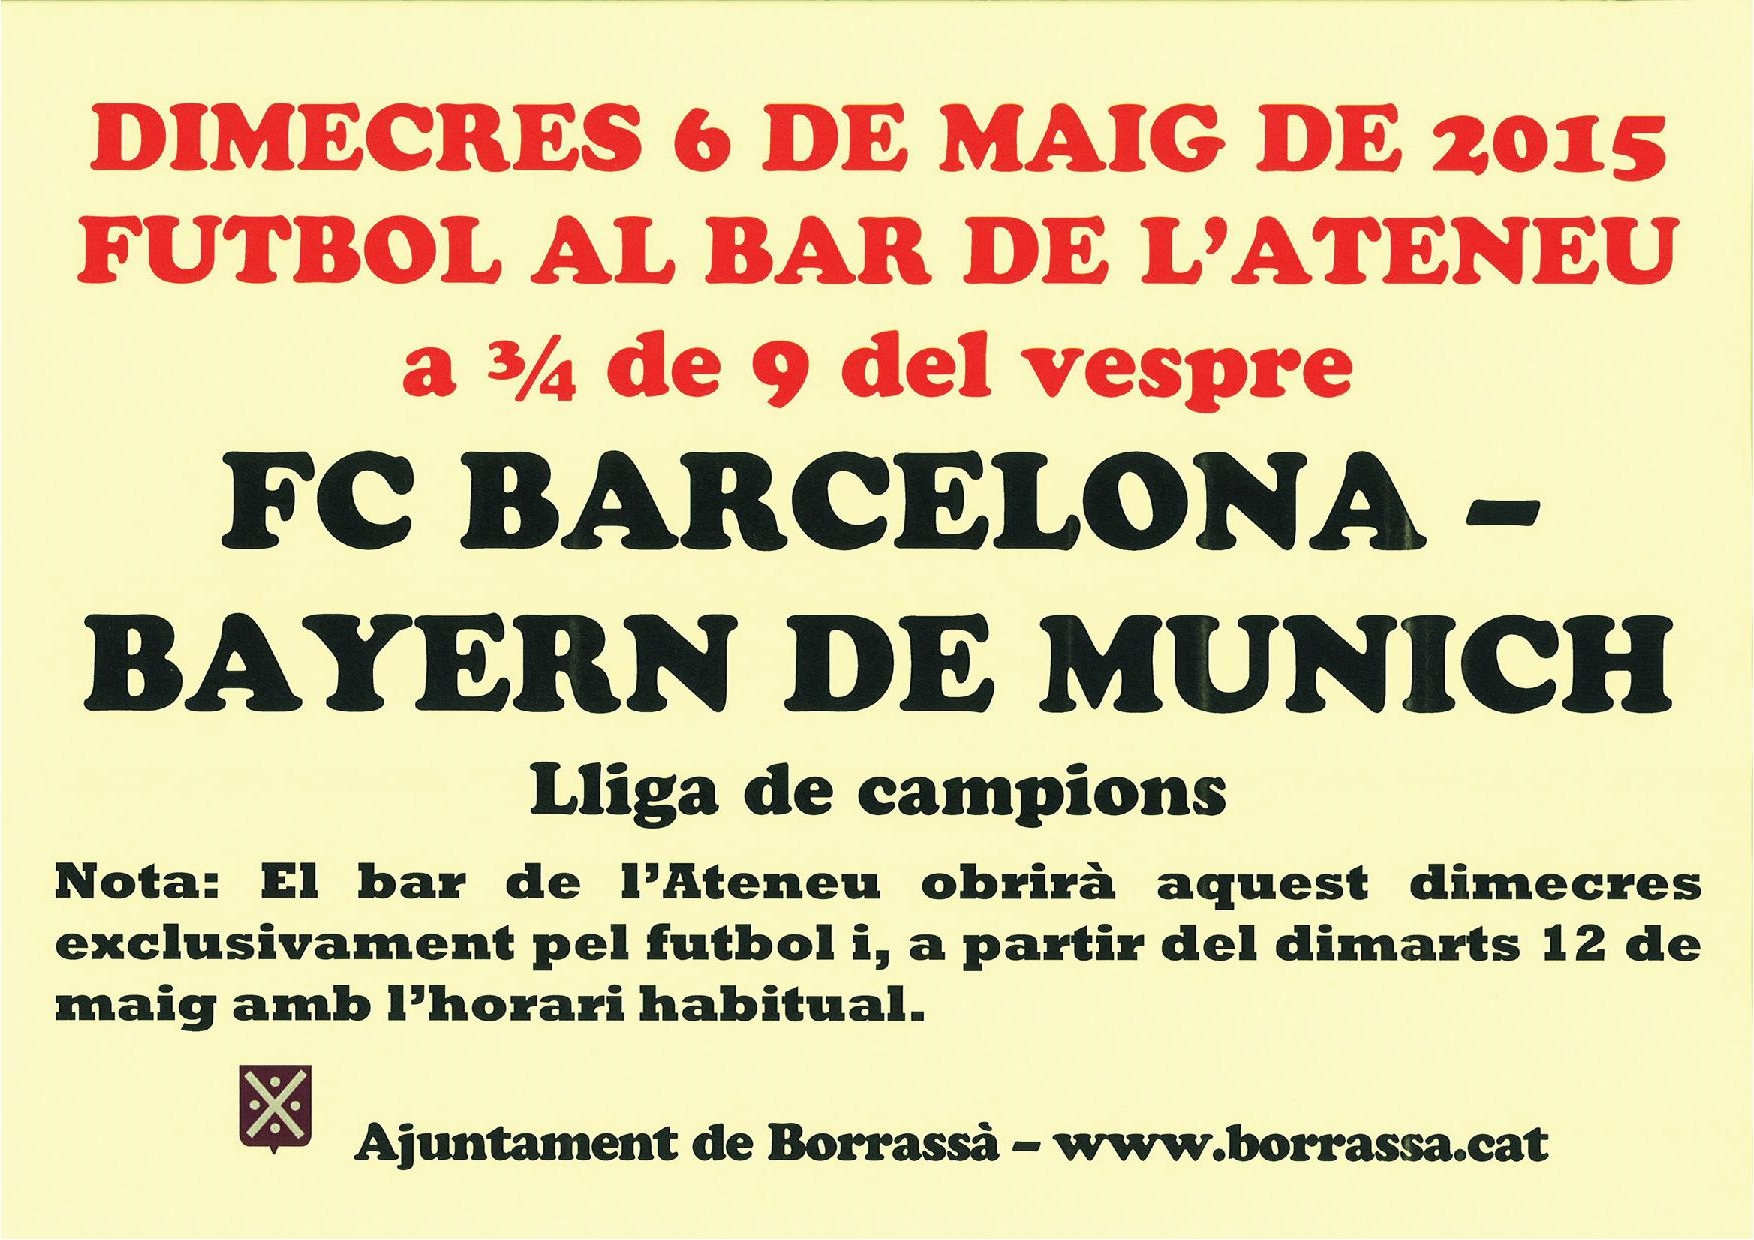 El bar de l'Ateneu obre aquest dimecres a 3/4 de 9 del vespre perquè qui vulgui hi pugui anar a veure el partit de futbol de la Lliga de campions entre el Barça i el Bayern de Munich. A partir del proper dimarts, 12 de maig, el bar obrirà amb l'horari habitual.